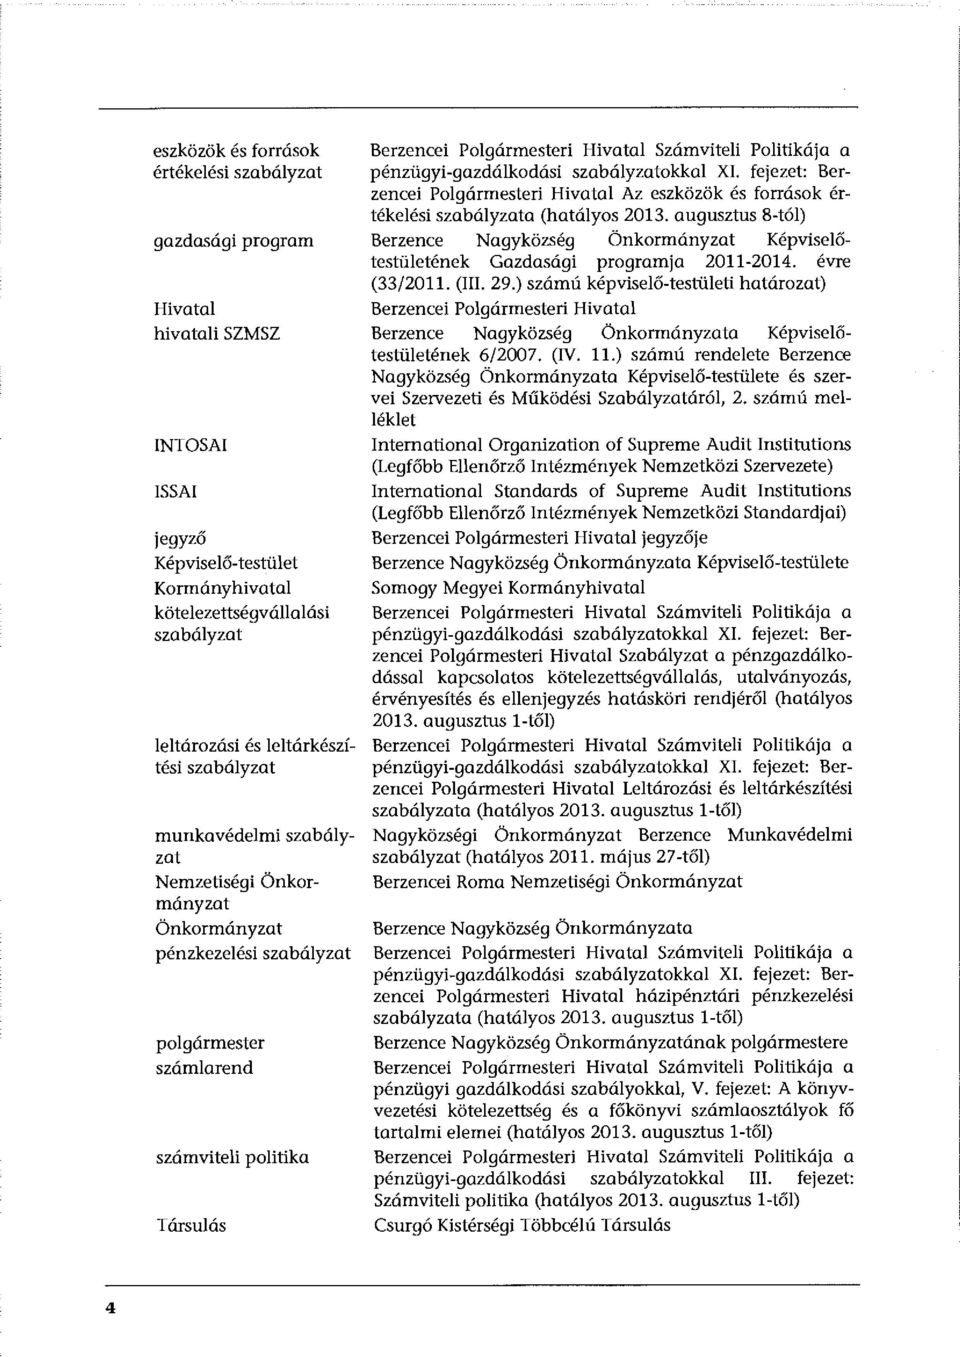 Számviteli Politikája a pénzügyi-gazdálkodási szabályzatokkal XI. fejezet: Berzencei Polgármesteri Hivatal Az eszközök és források értékelési szabályzata (hatályos 2013.